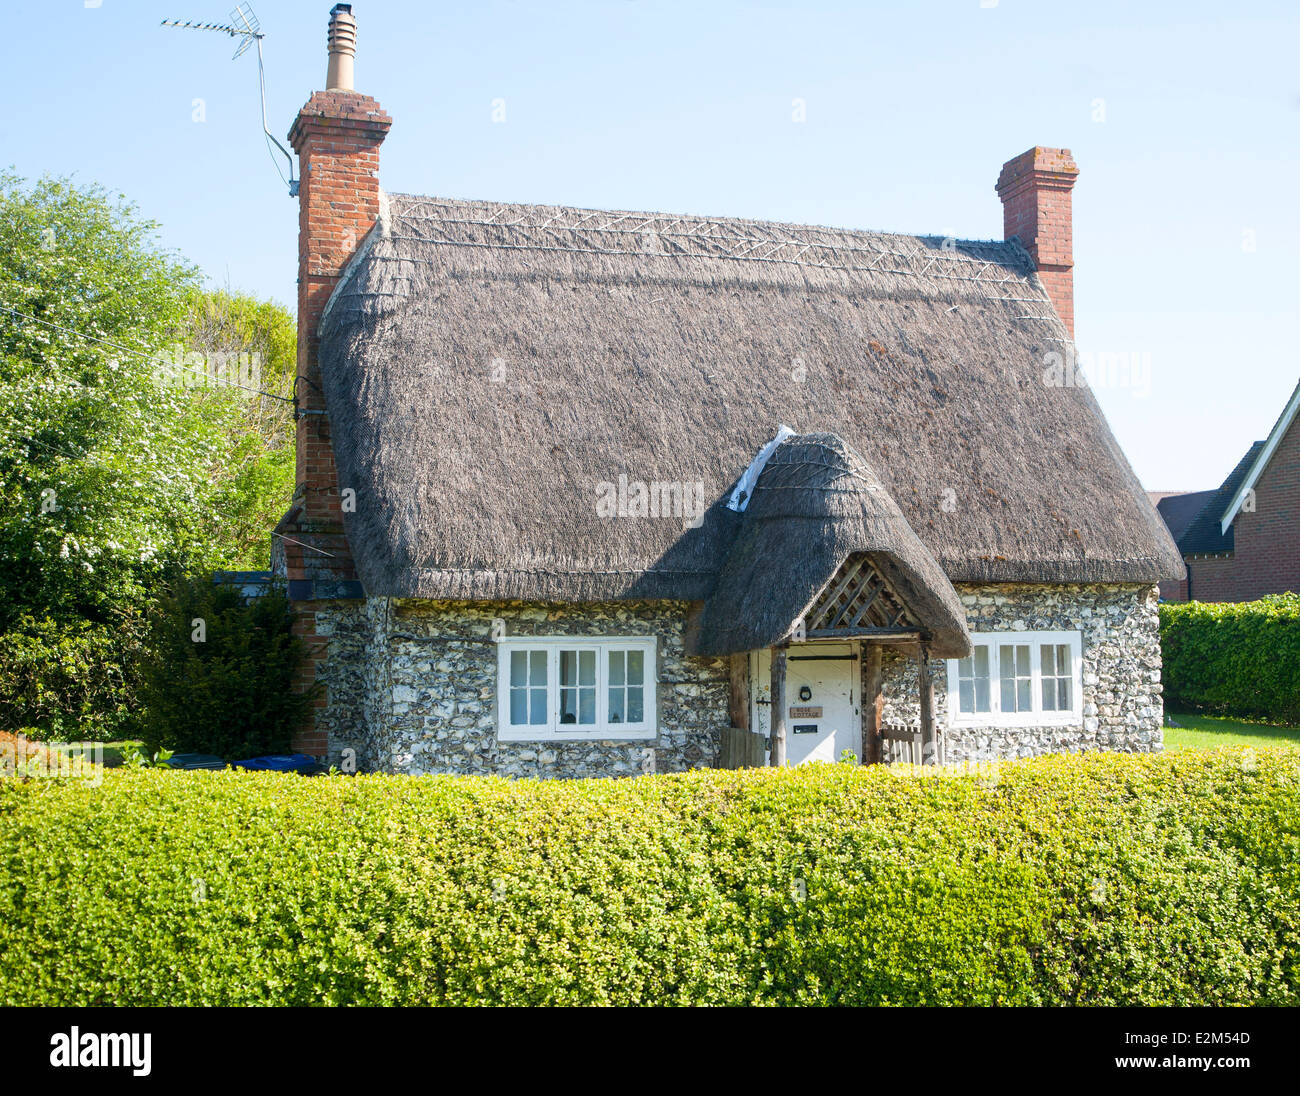 Joli Cottage de chaume et de silex Wilcot village, Wiltshire, Angleterre Banque D'Images